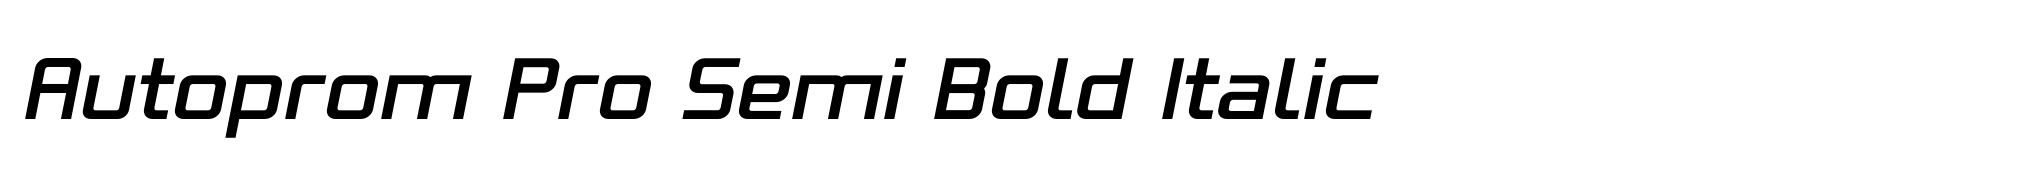 Autoprom Pro Semi Bold Italic image